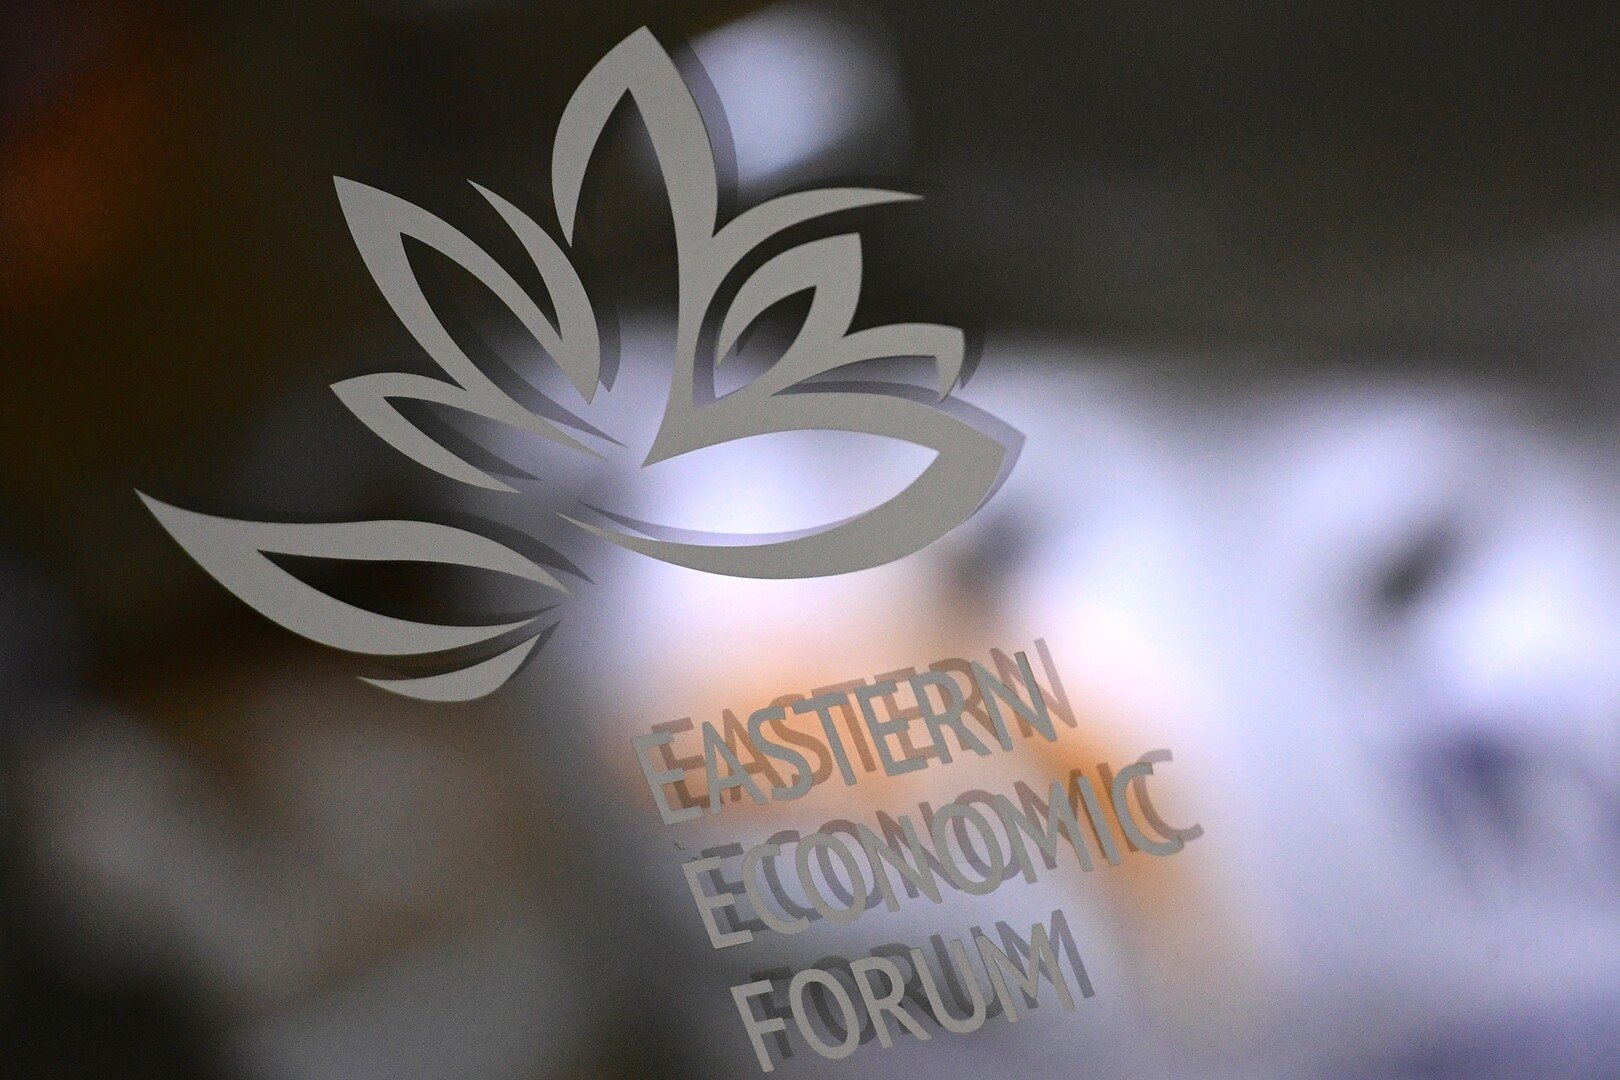 حصيلة منتدى الشرق الاقتصادي.. 270 اتفاقية بأكثر من 51 مليار دولار